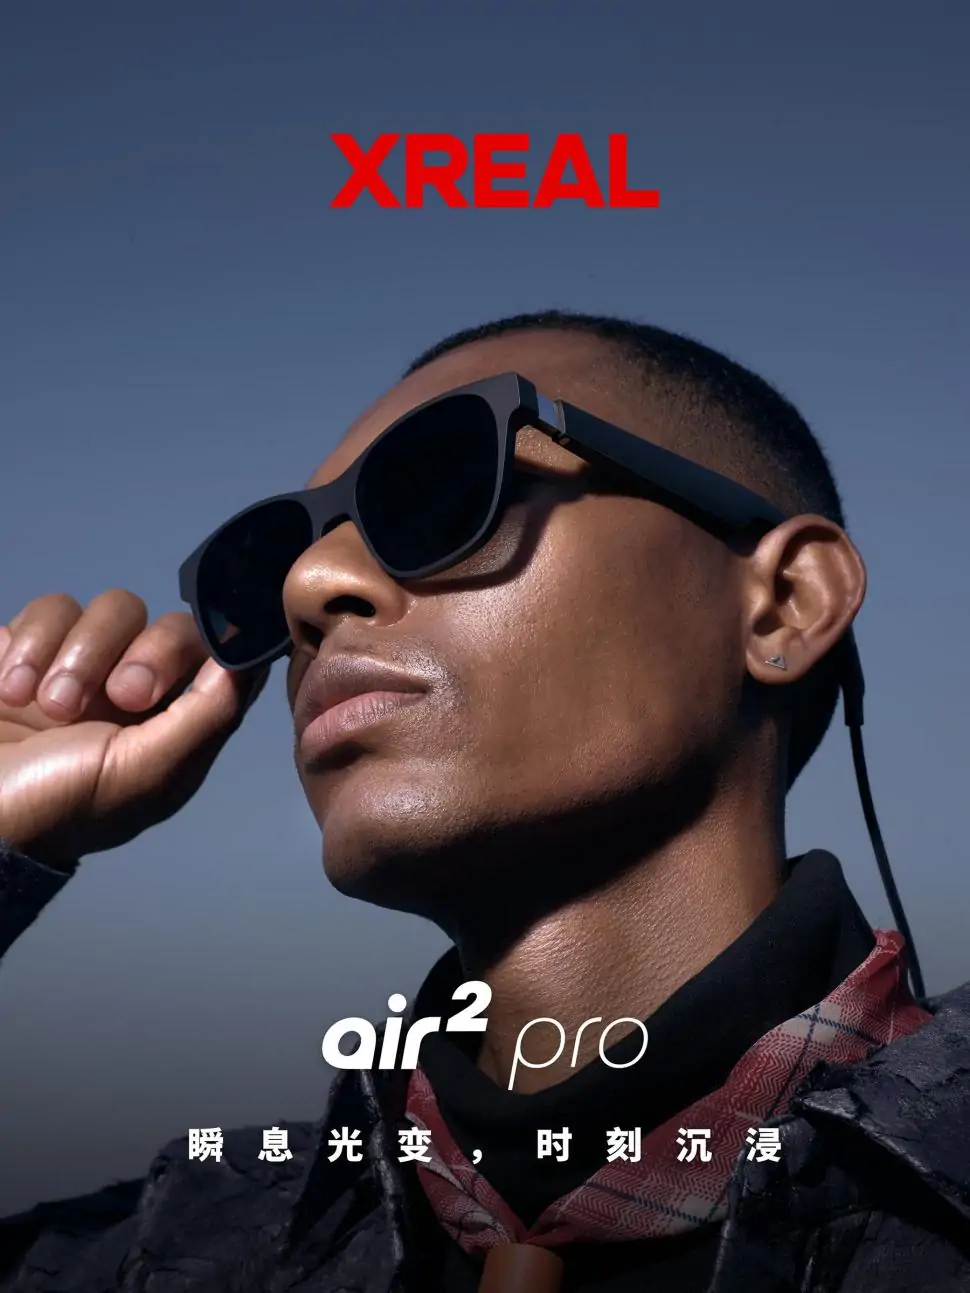 XREAL Air